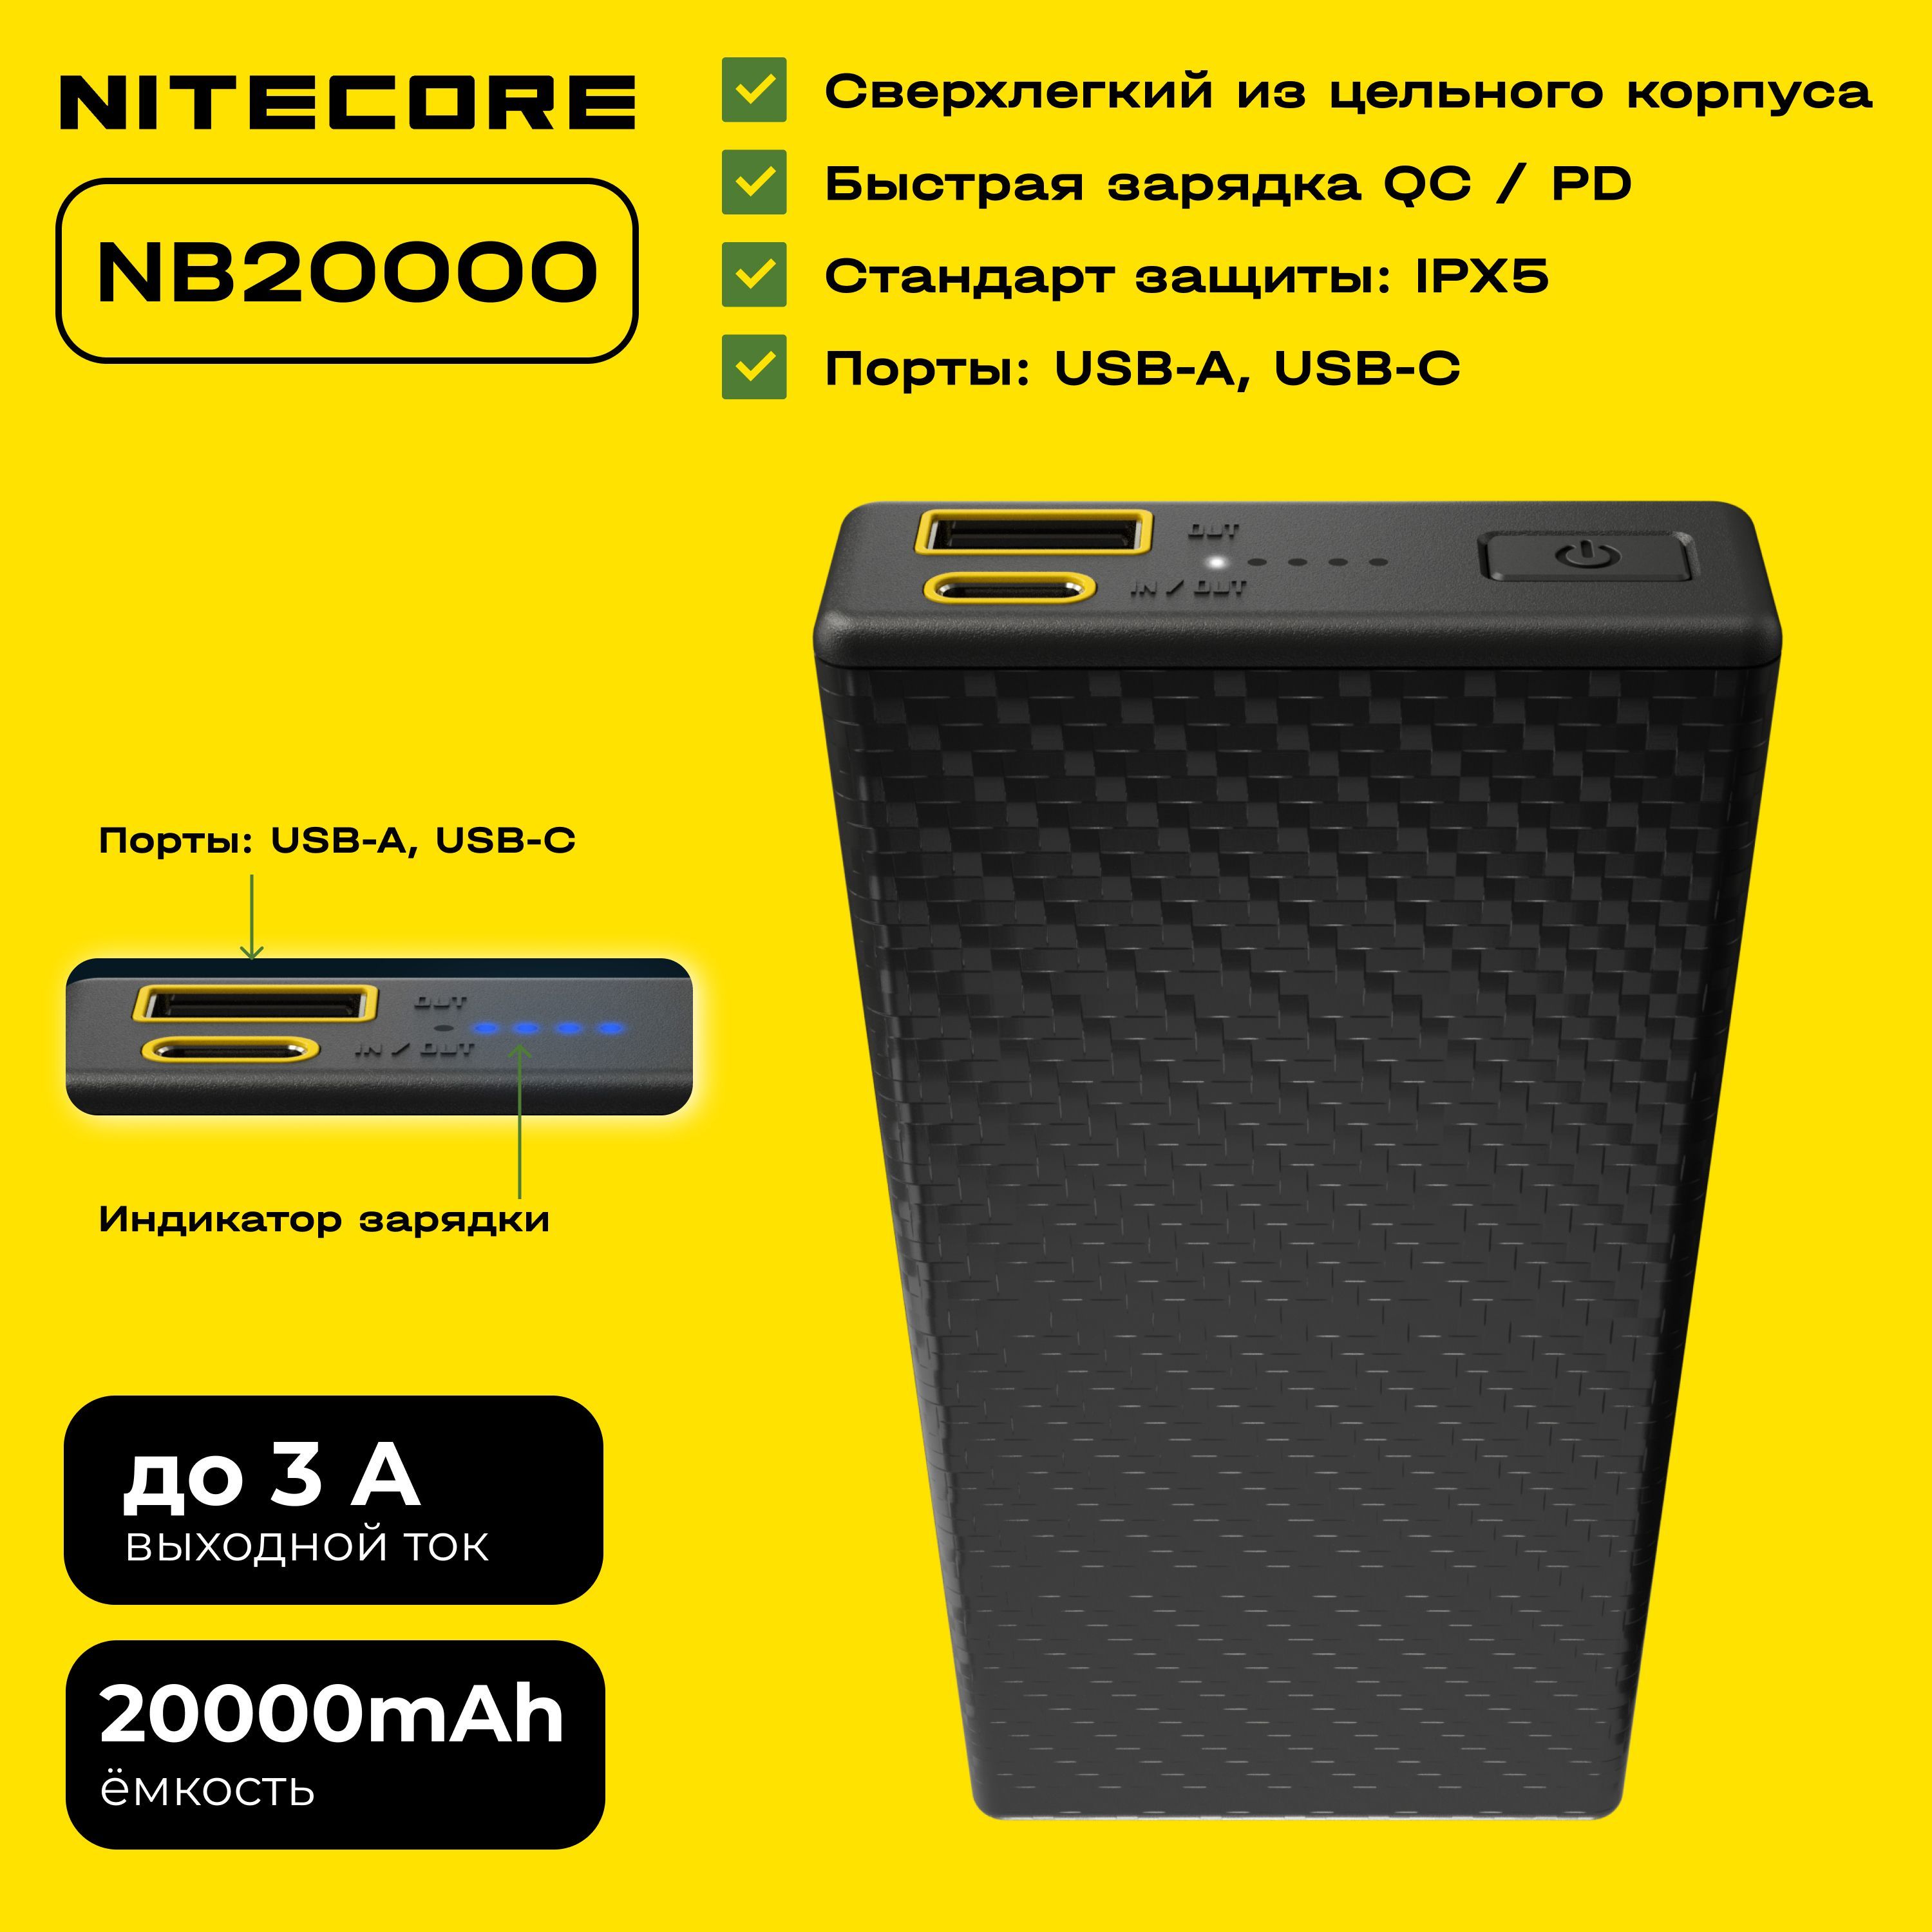 Nitecore nb20000